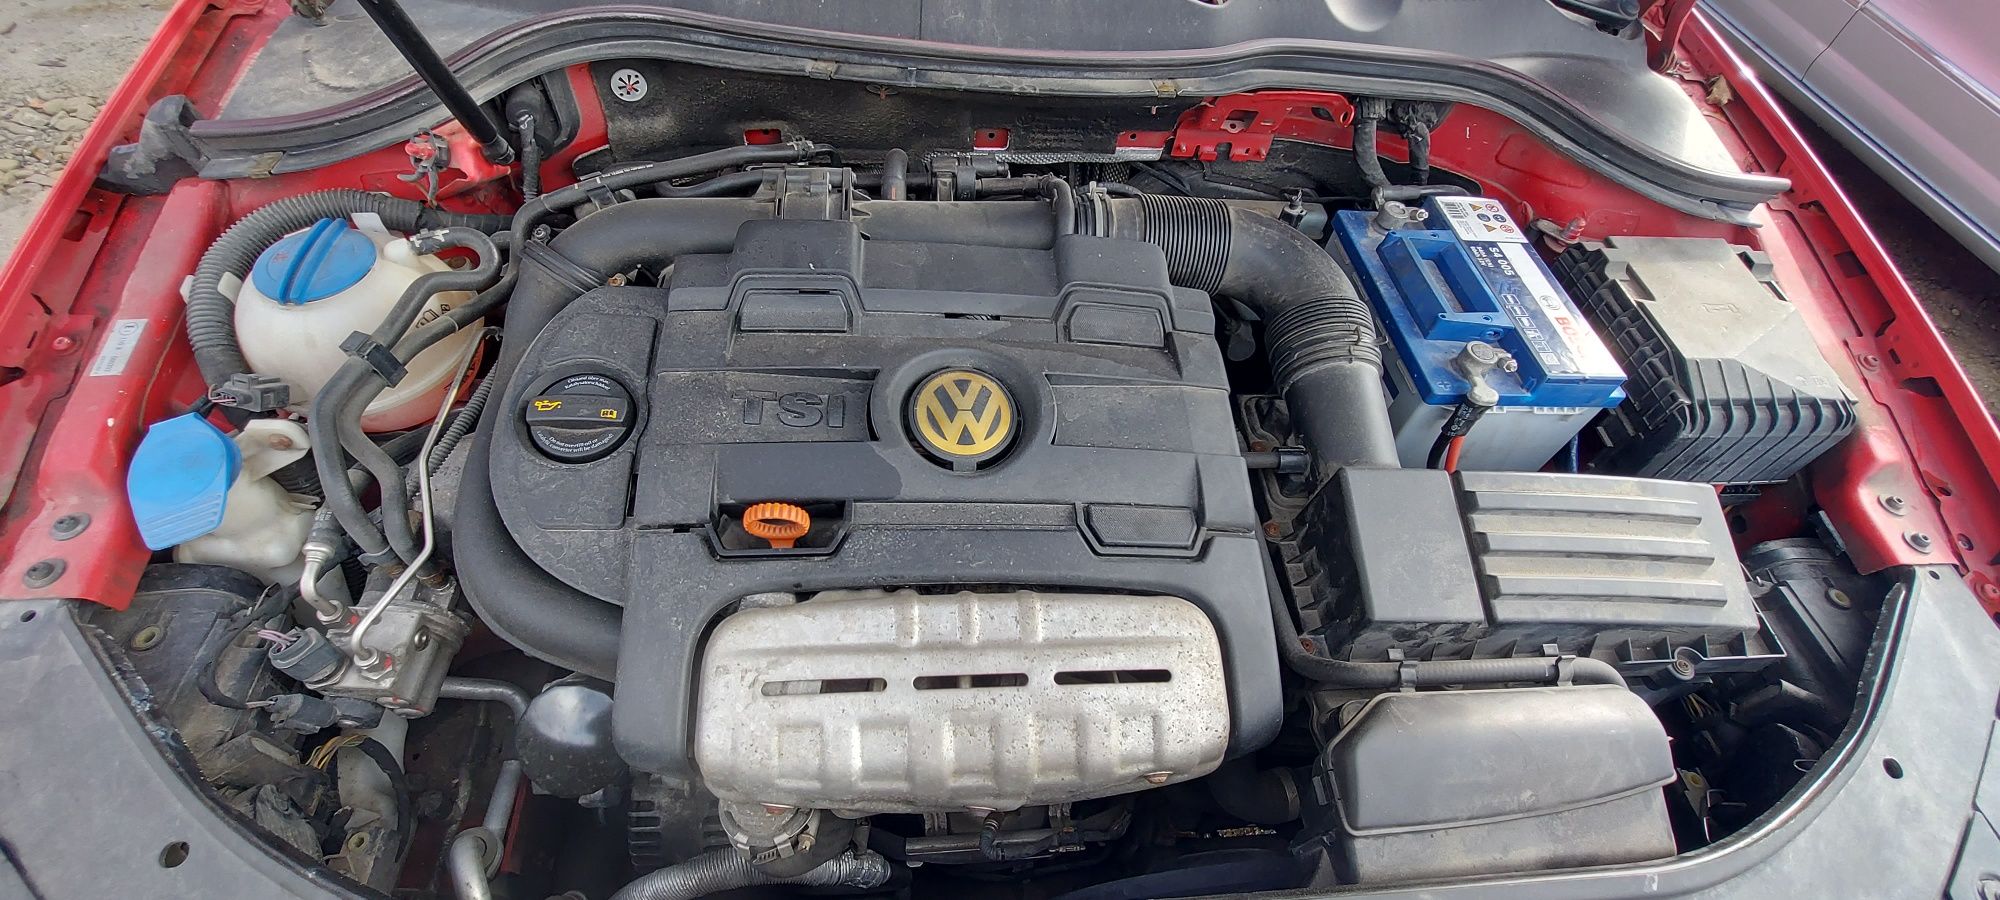 Авторозбірка VW Passat b6 1.4tsi DSG колір LY3D шрот запчасти пасат б6